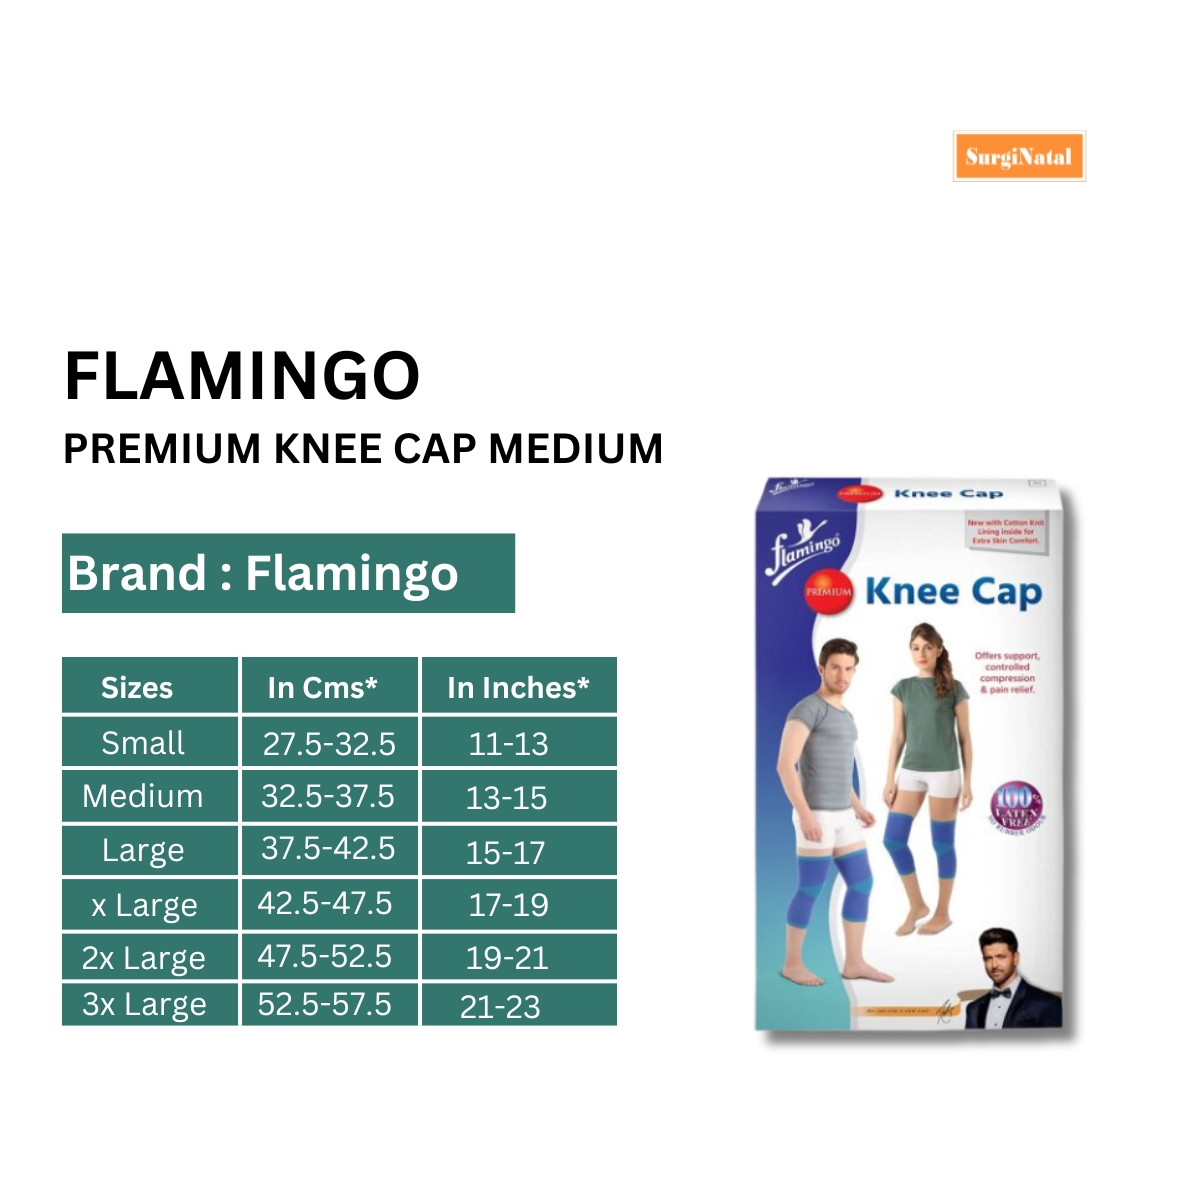 flamingo premium knee cap medium